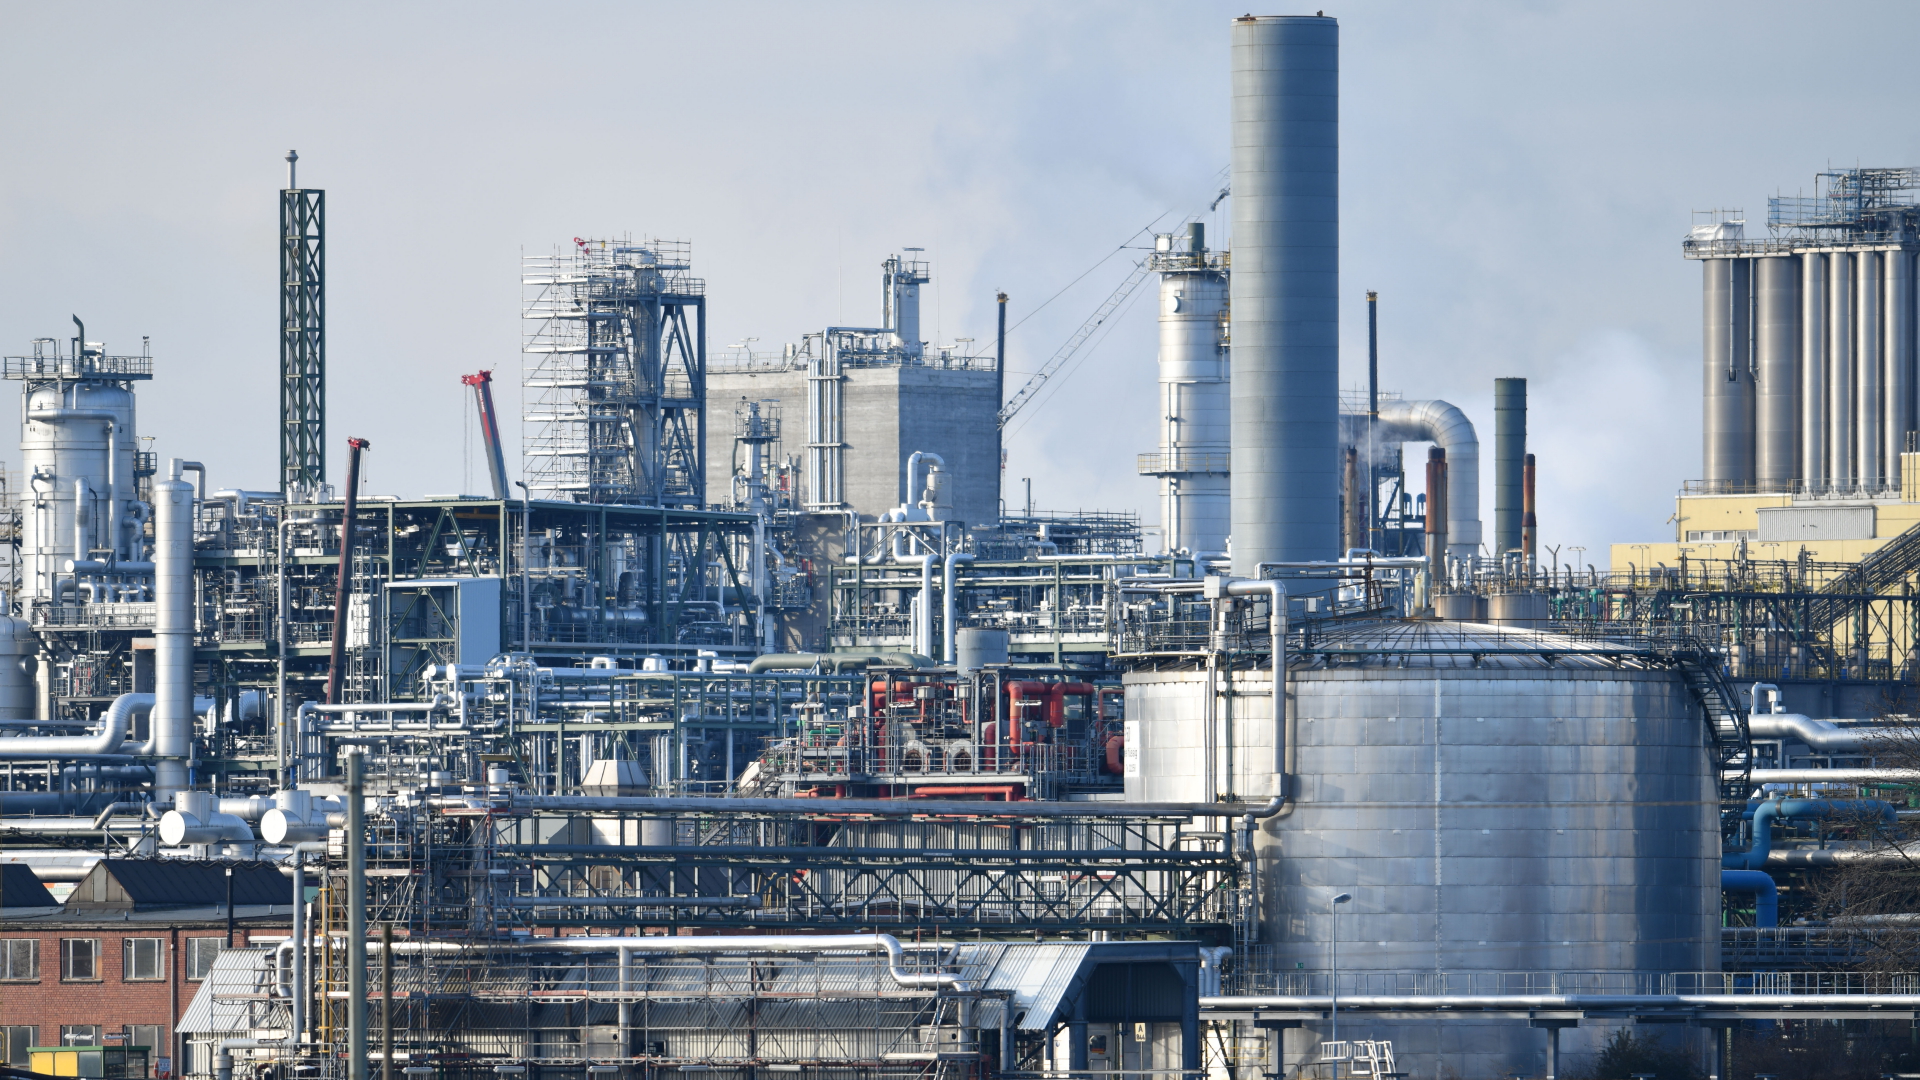 Chemieanlagen auf dem Werksgelände von BASF in Ludwigshafen | dpa